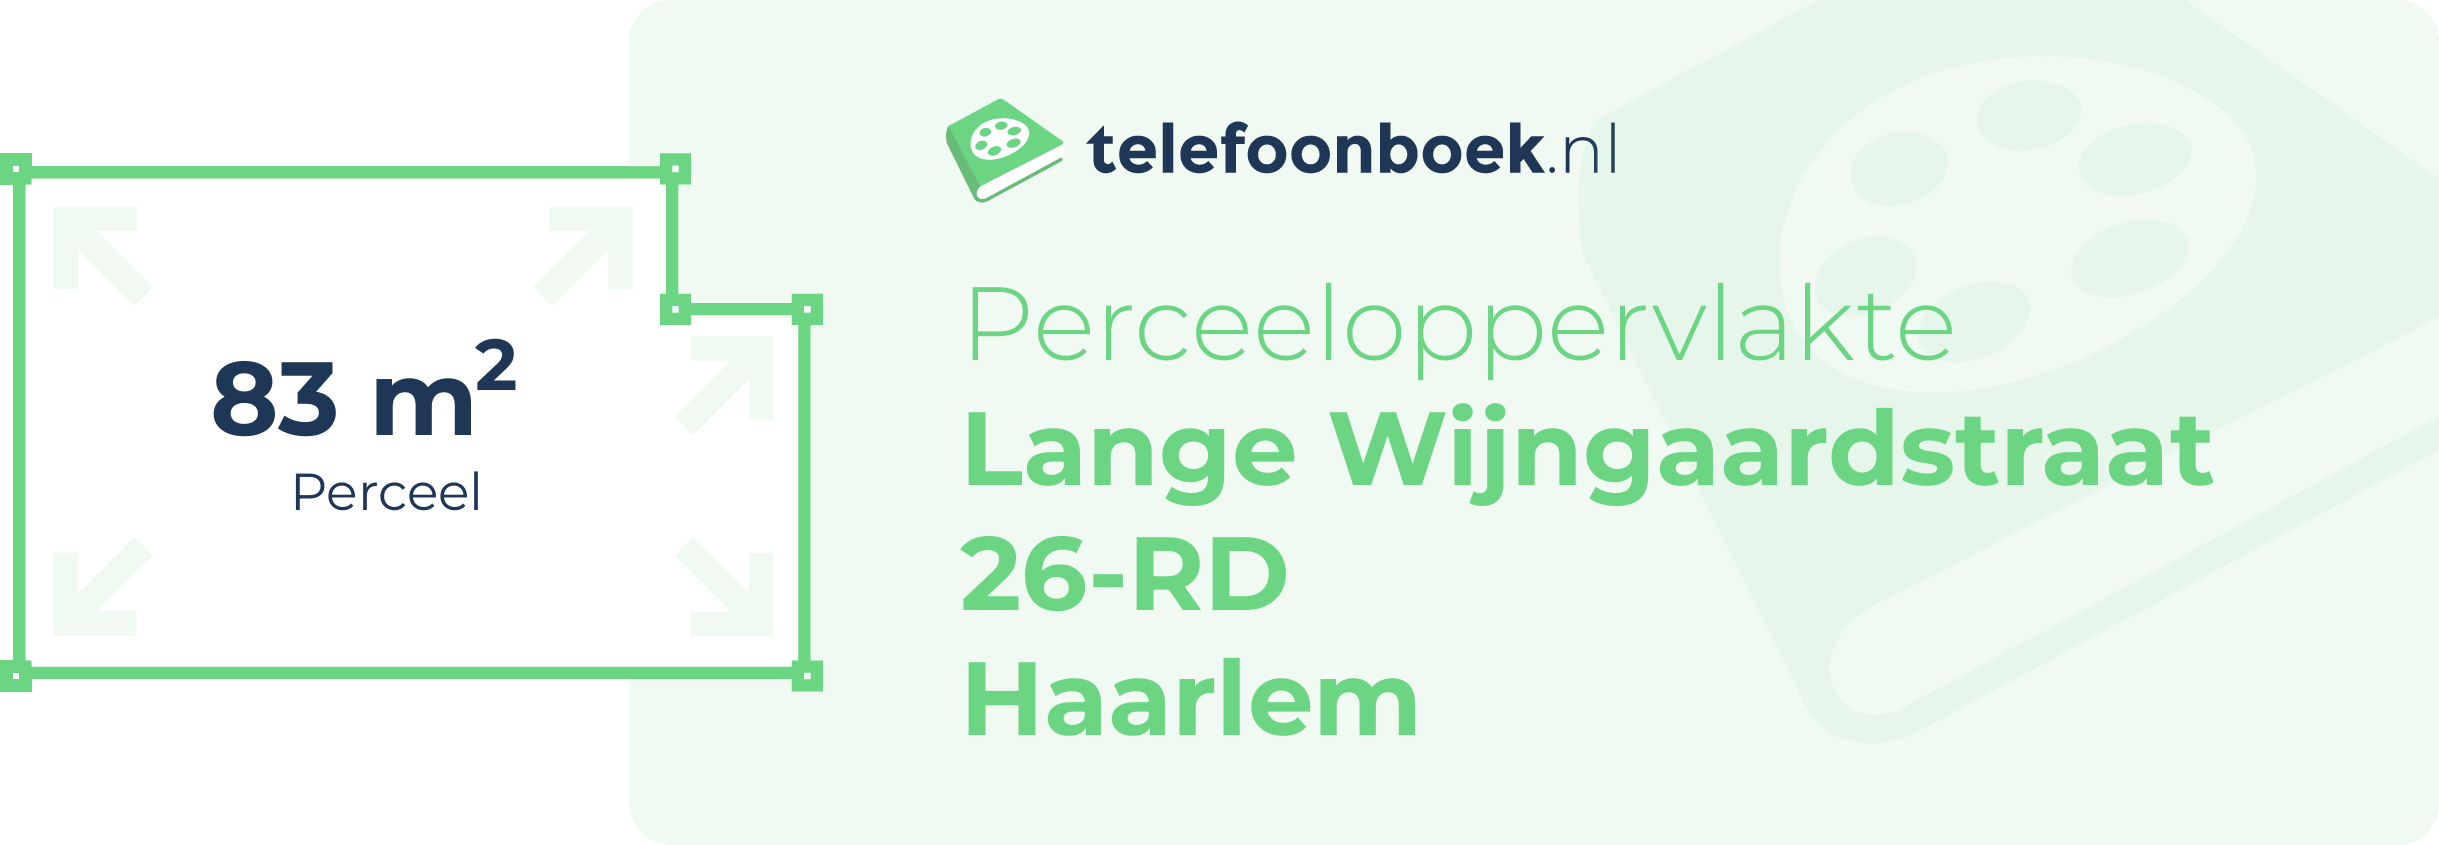 Perceeloppervlakte Lange Wijngaardstraat 26-RD Haarlem